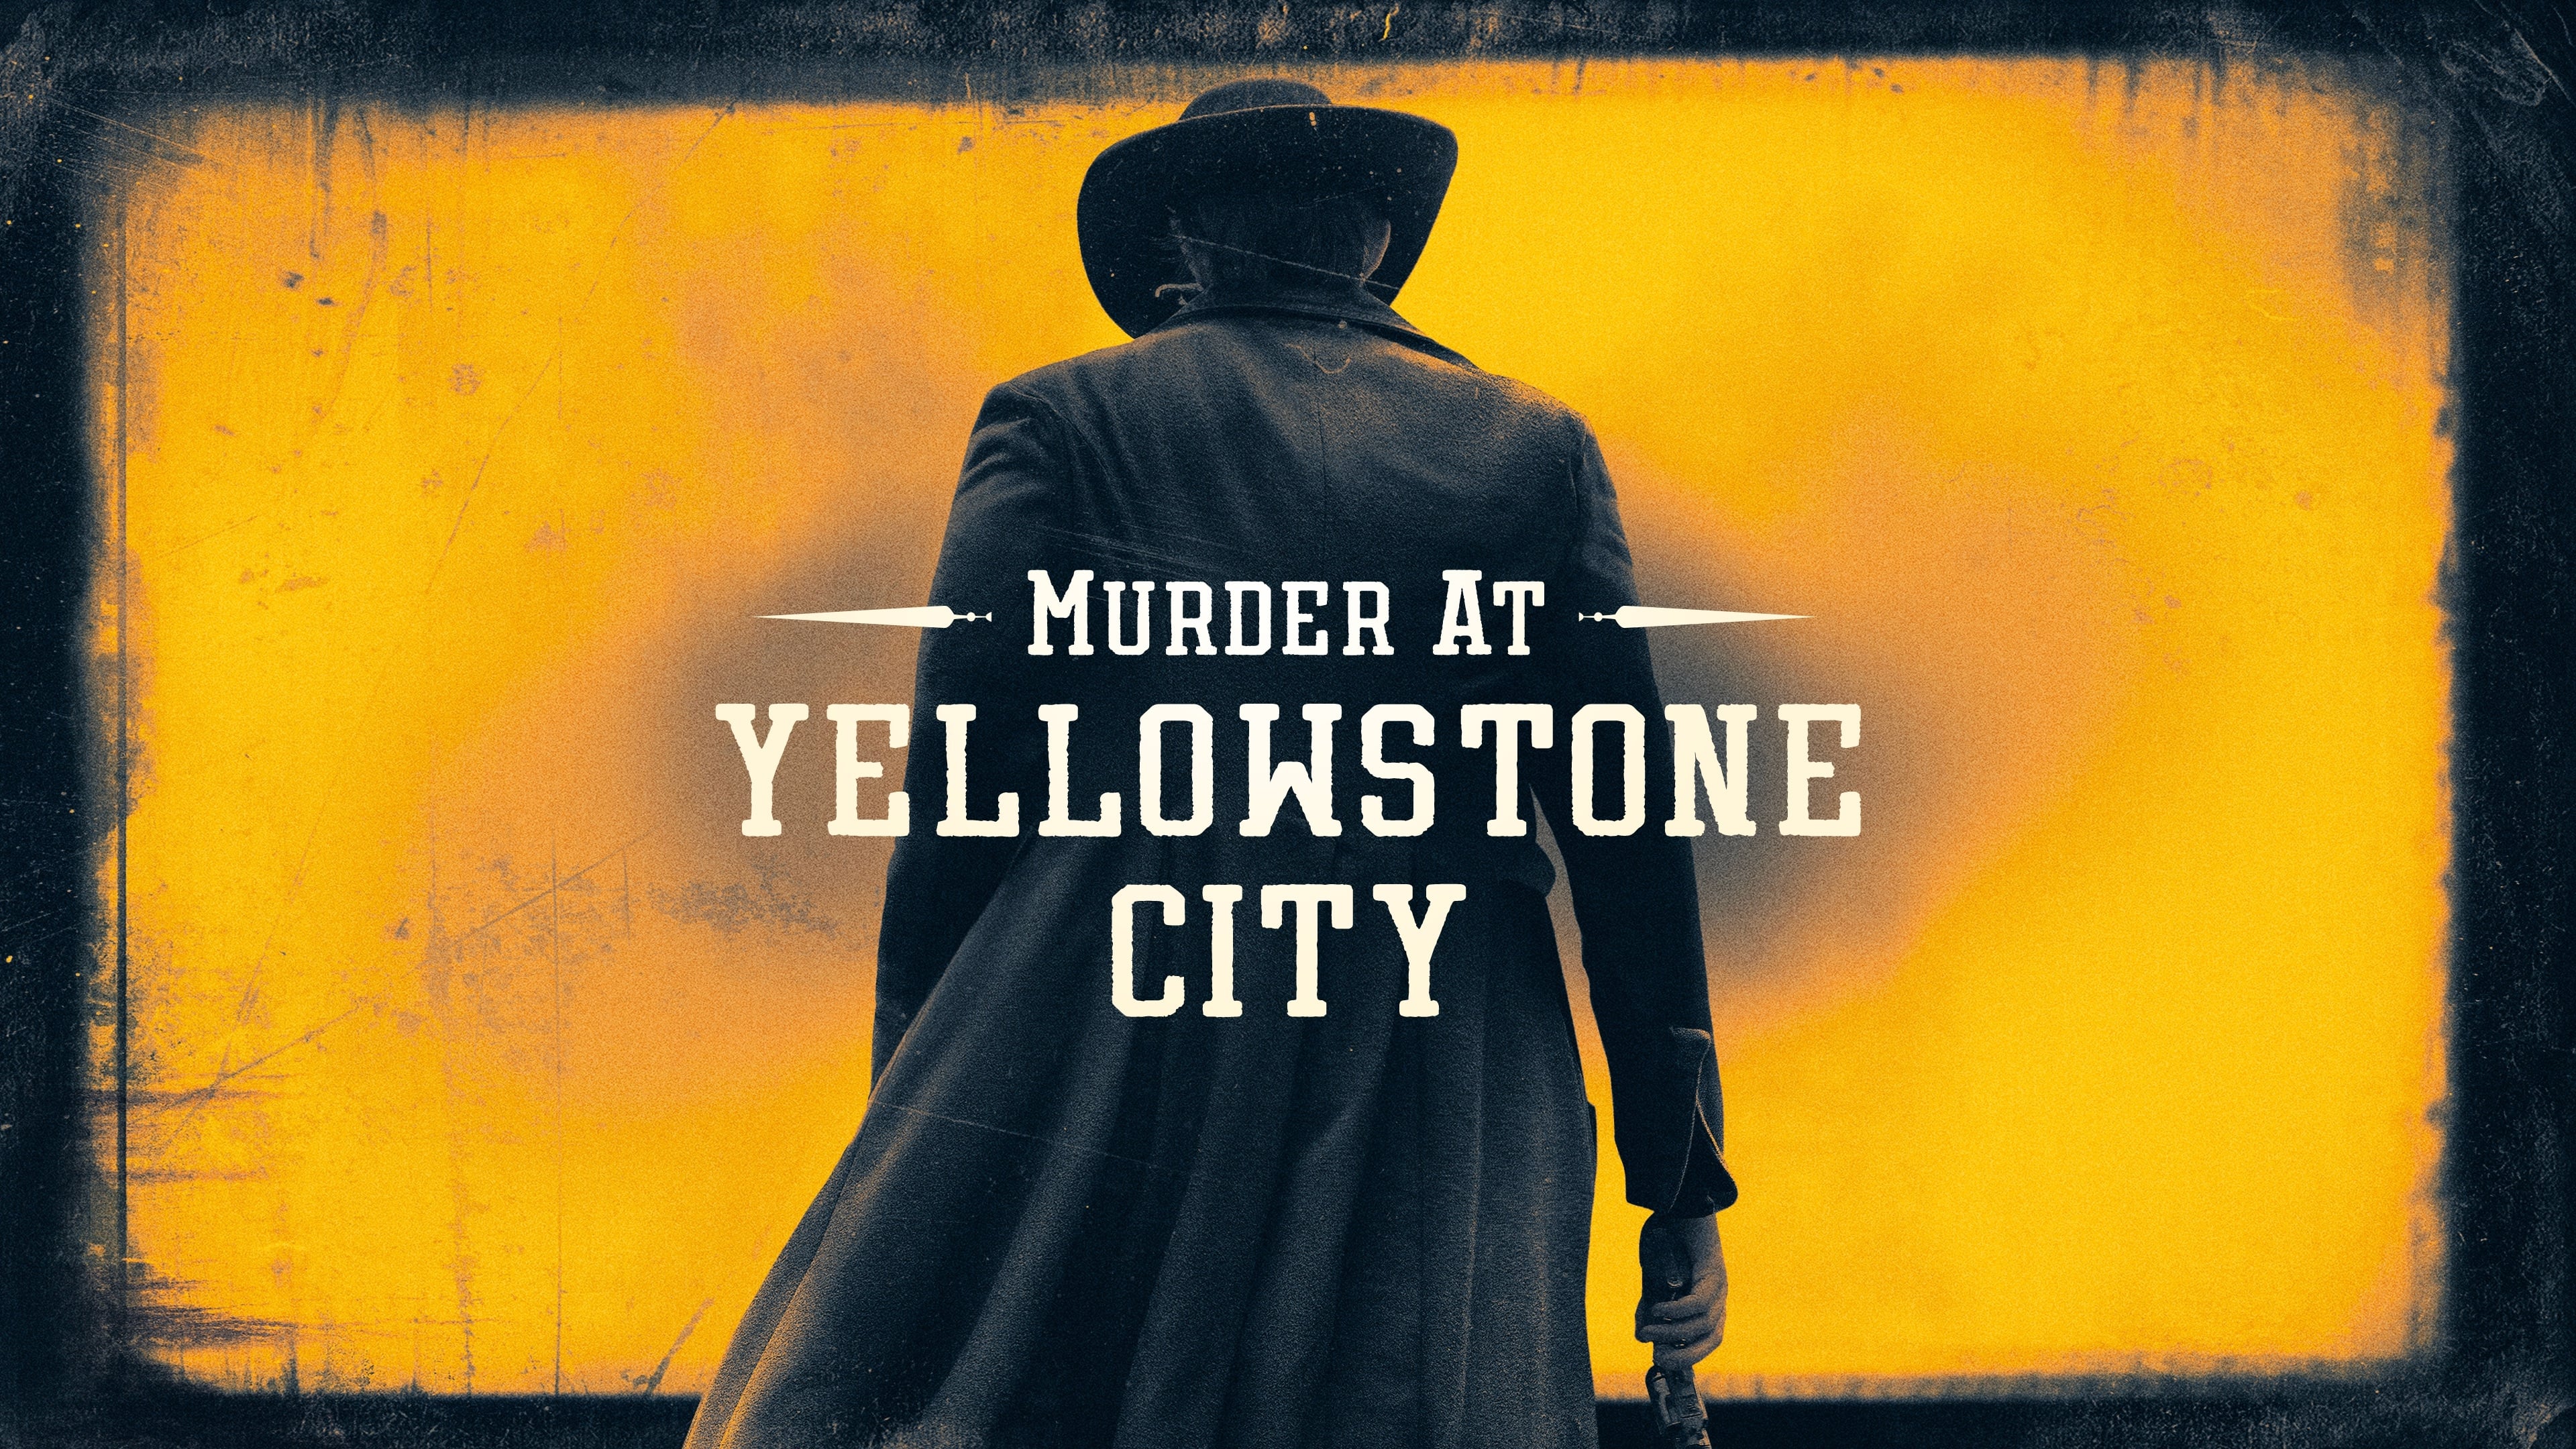 Ubojstvo u Yellowstone Cityju